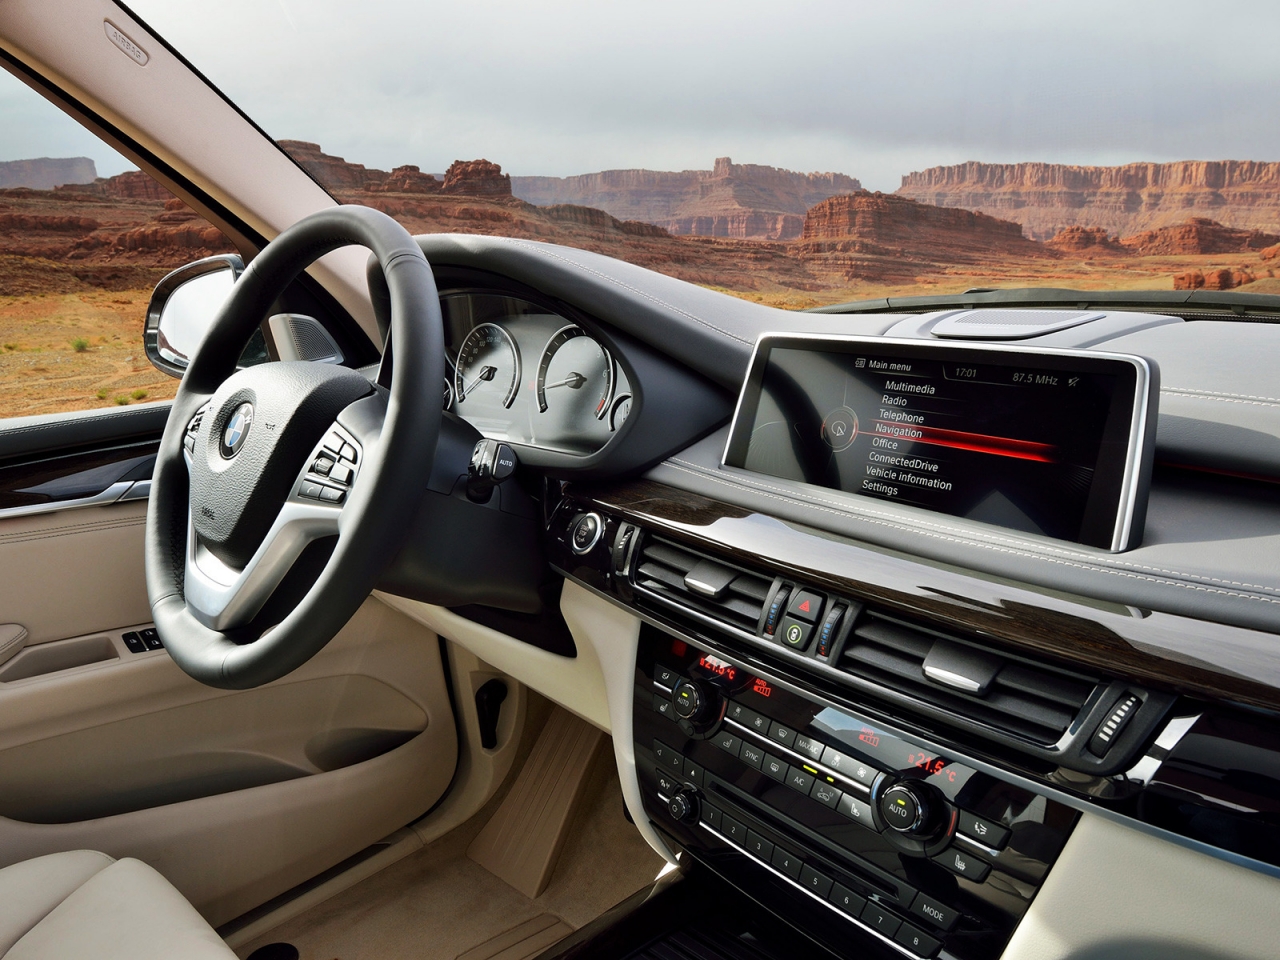 BMW X5 2014 Dashboard for 1280 x 960 resolution